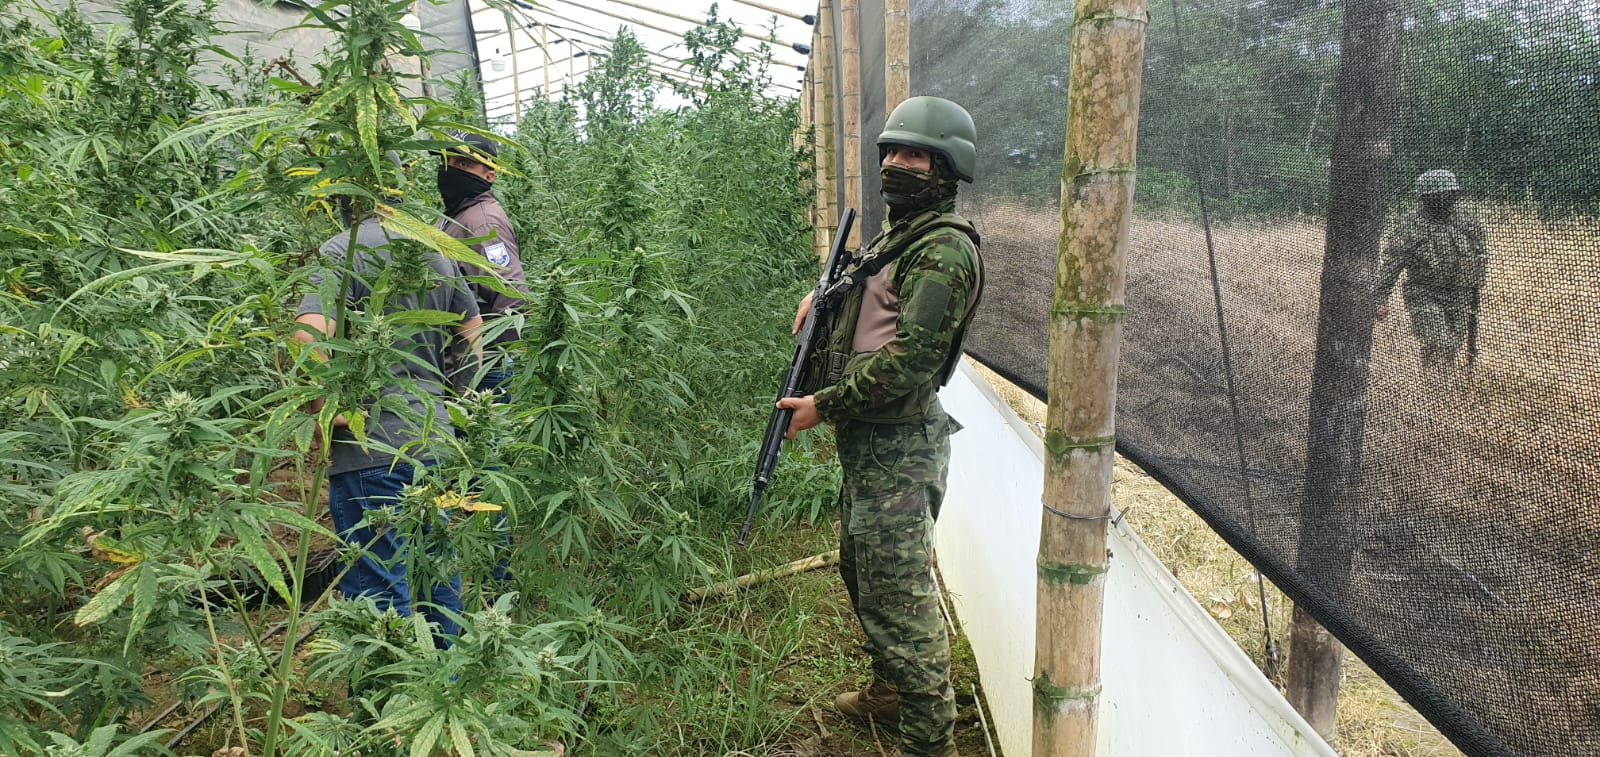 NOVEDAD. Una plantación de marihuana se encontró en el sitio.